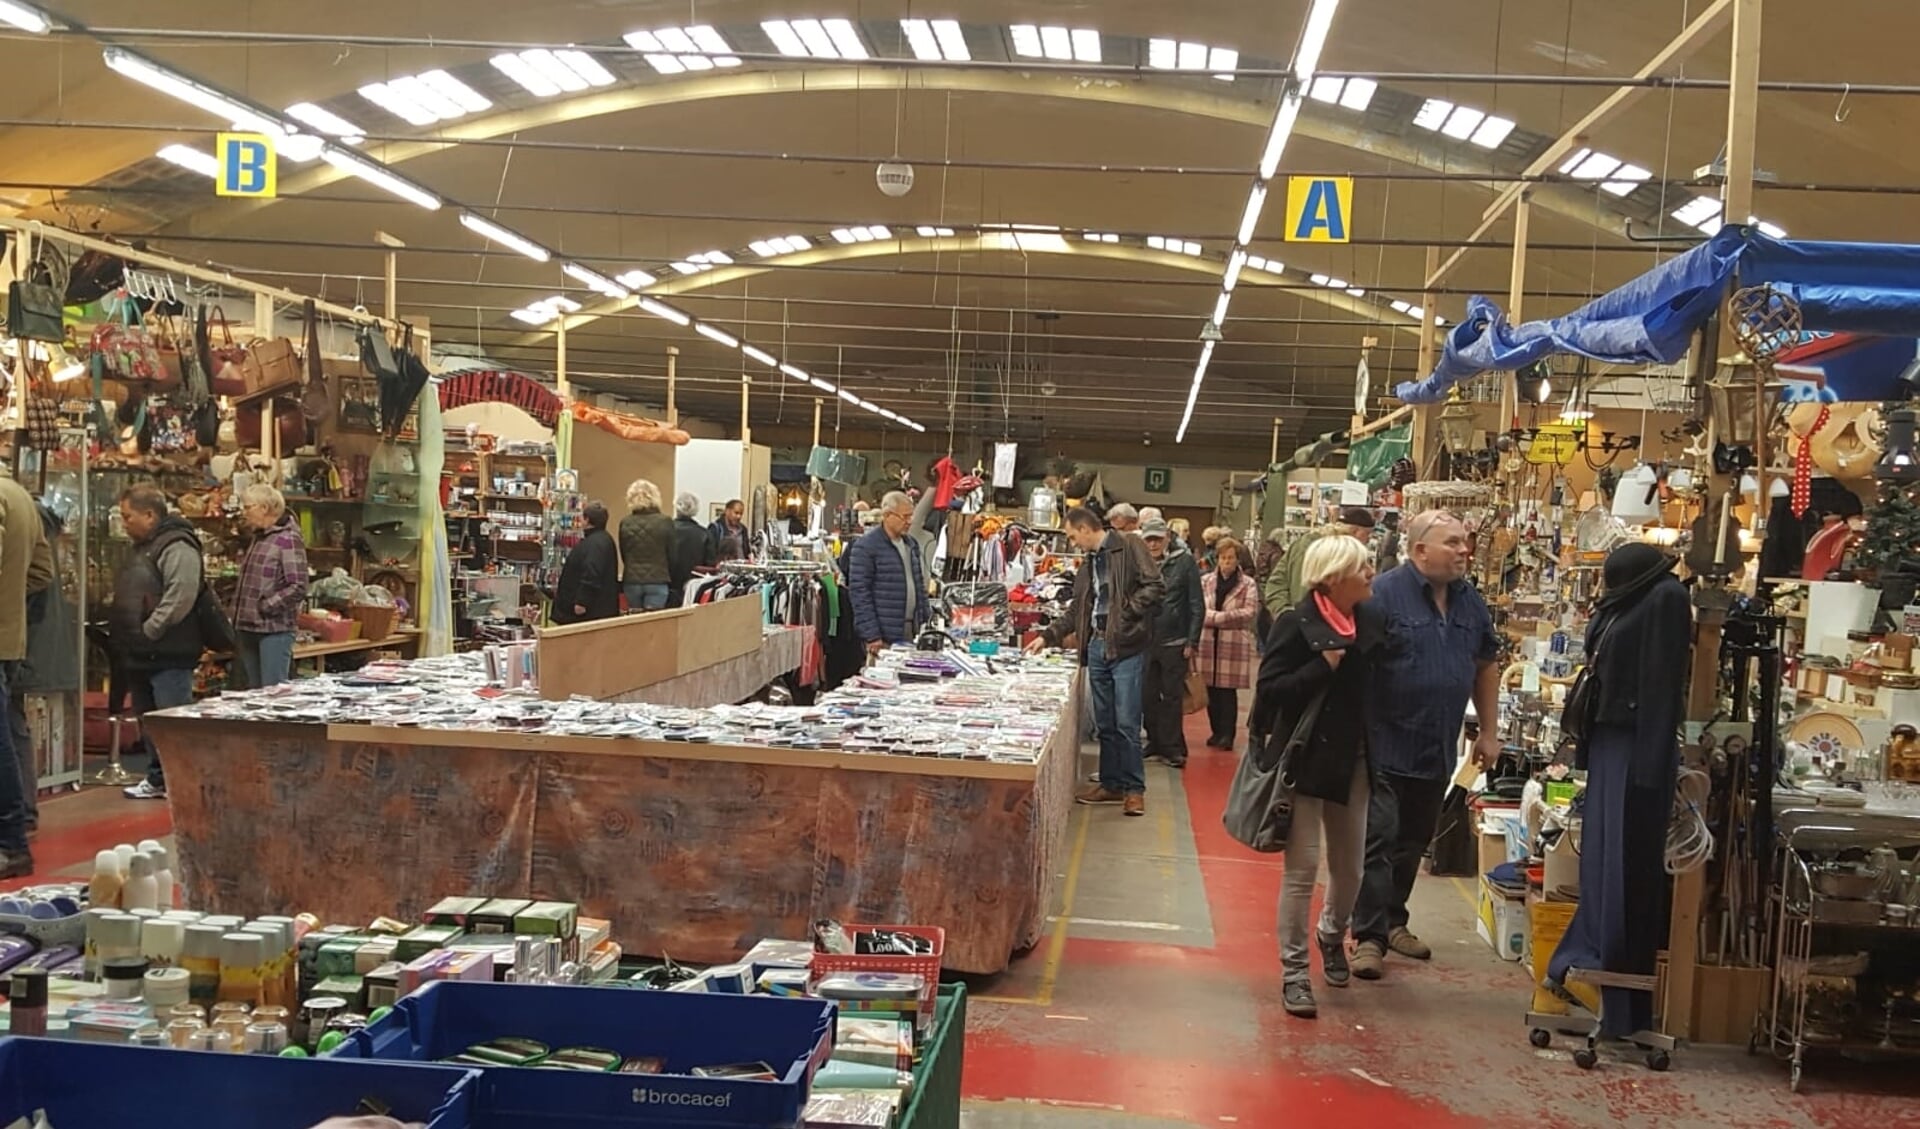 Gezelligheid plus een ruim aanbod aan antiek, curiosa en ludieke spullen is te vinden in de overdekte markthallen van de Vrije Markt Cuijk.